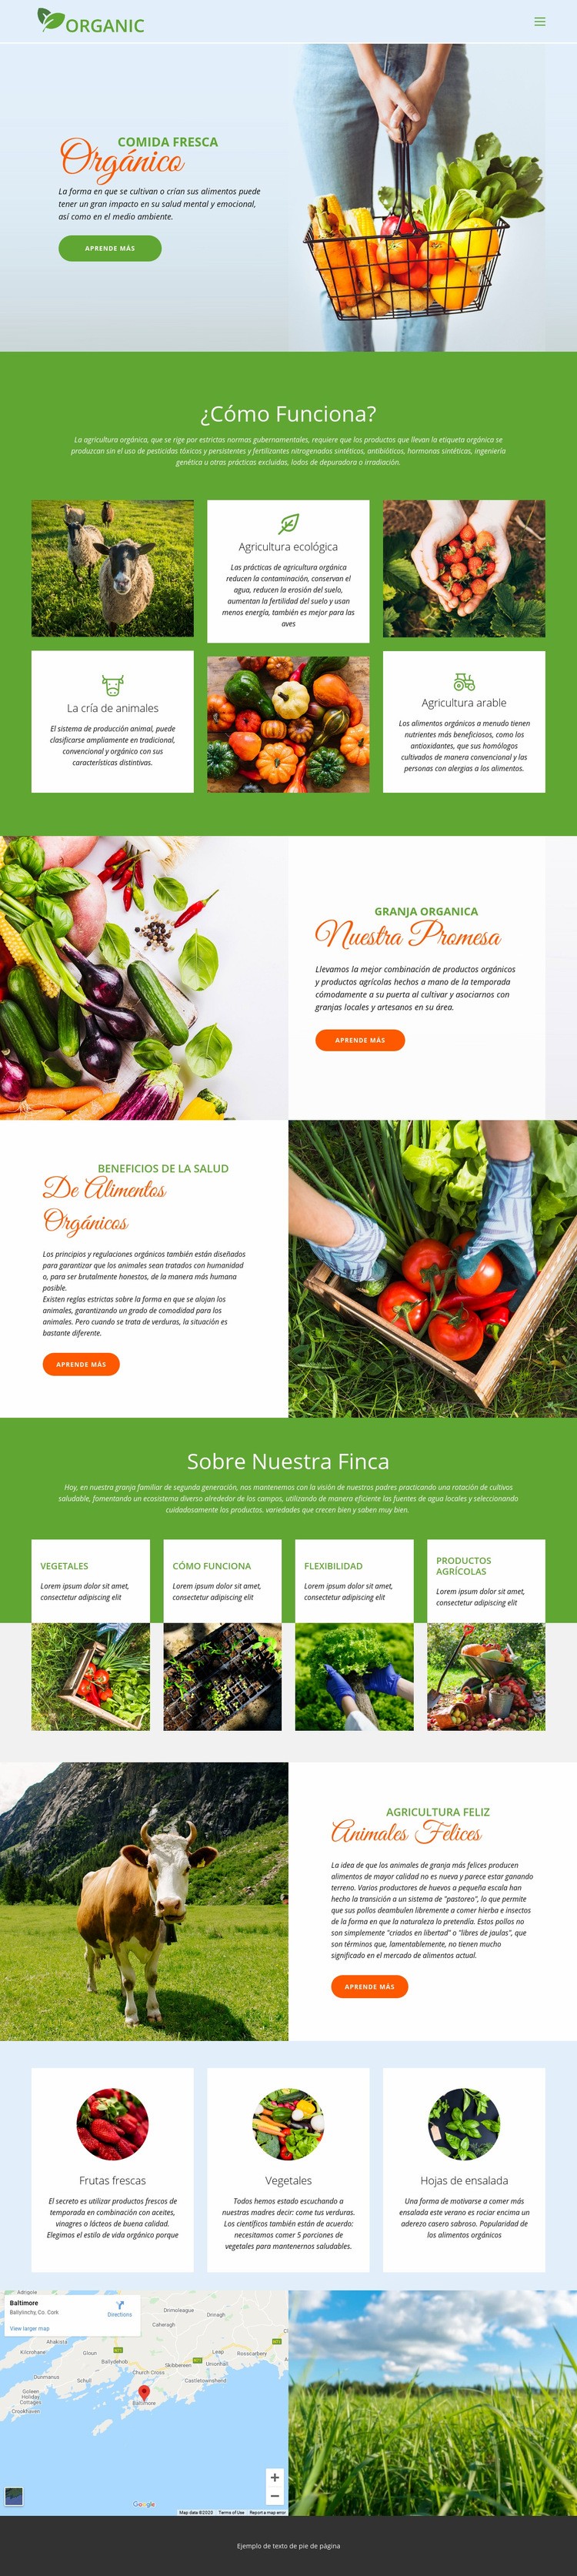 Come la mejor comida orgánica Diseño de páginas web